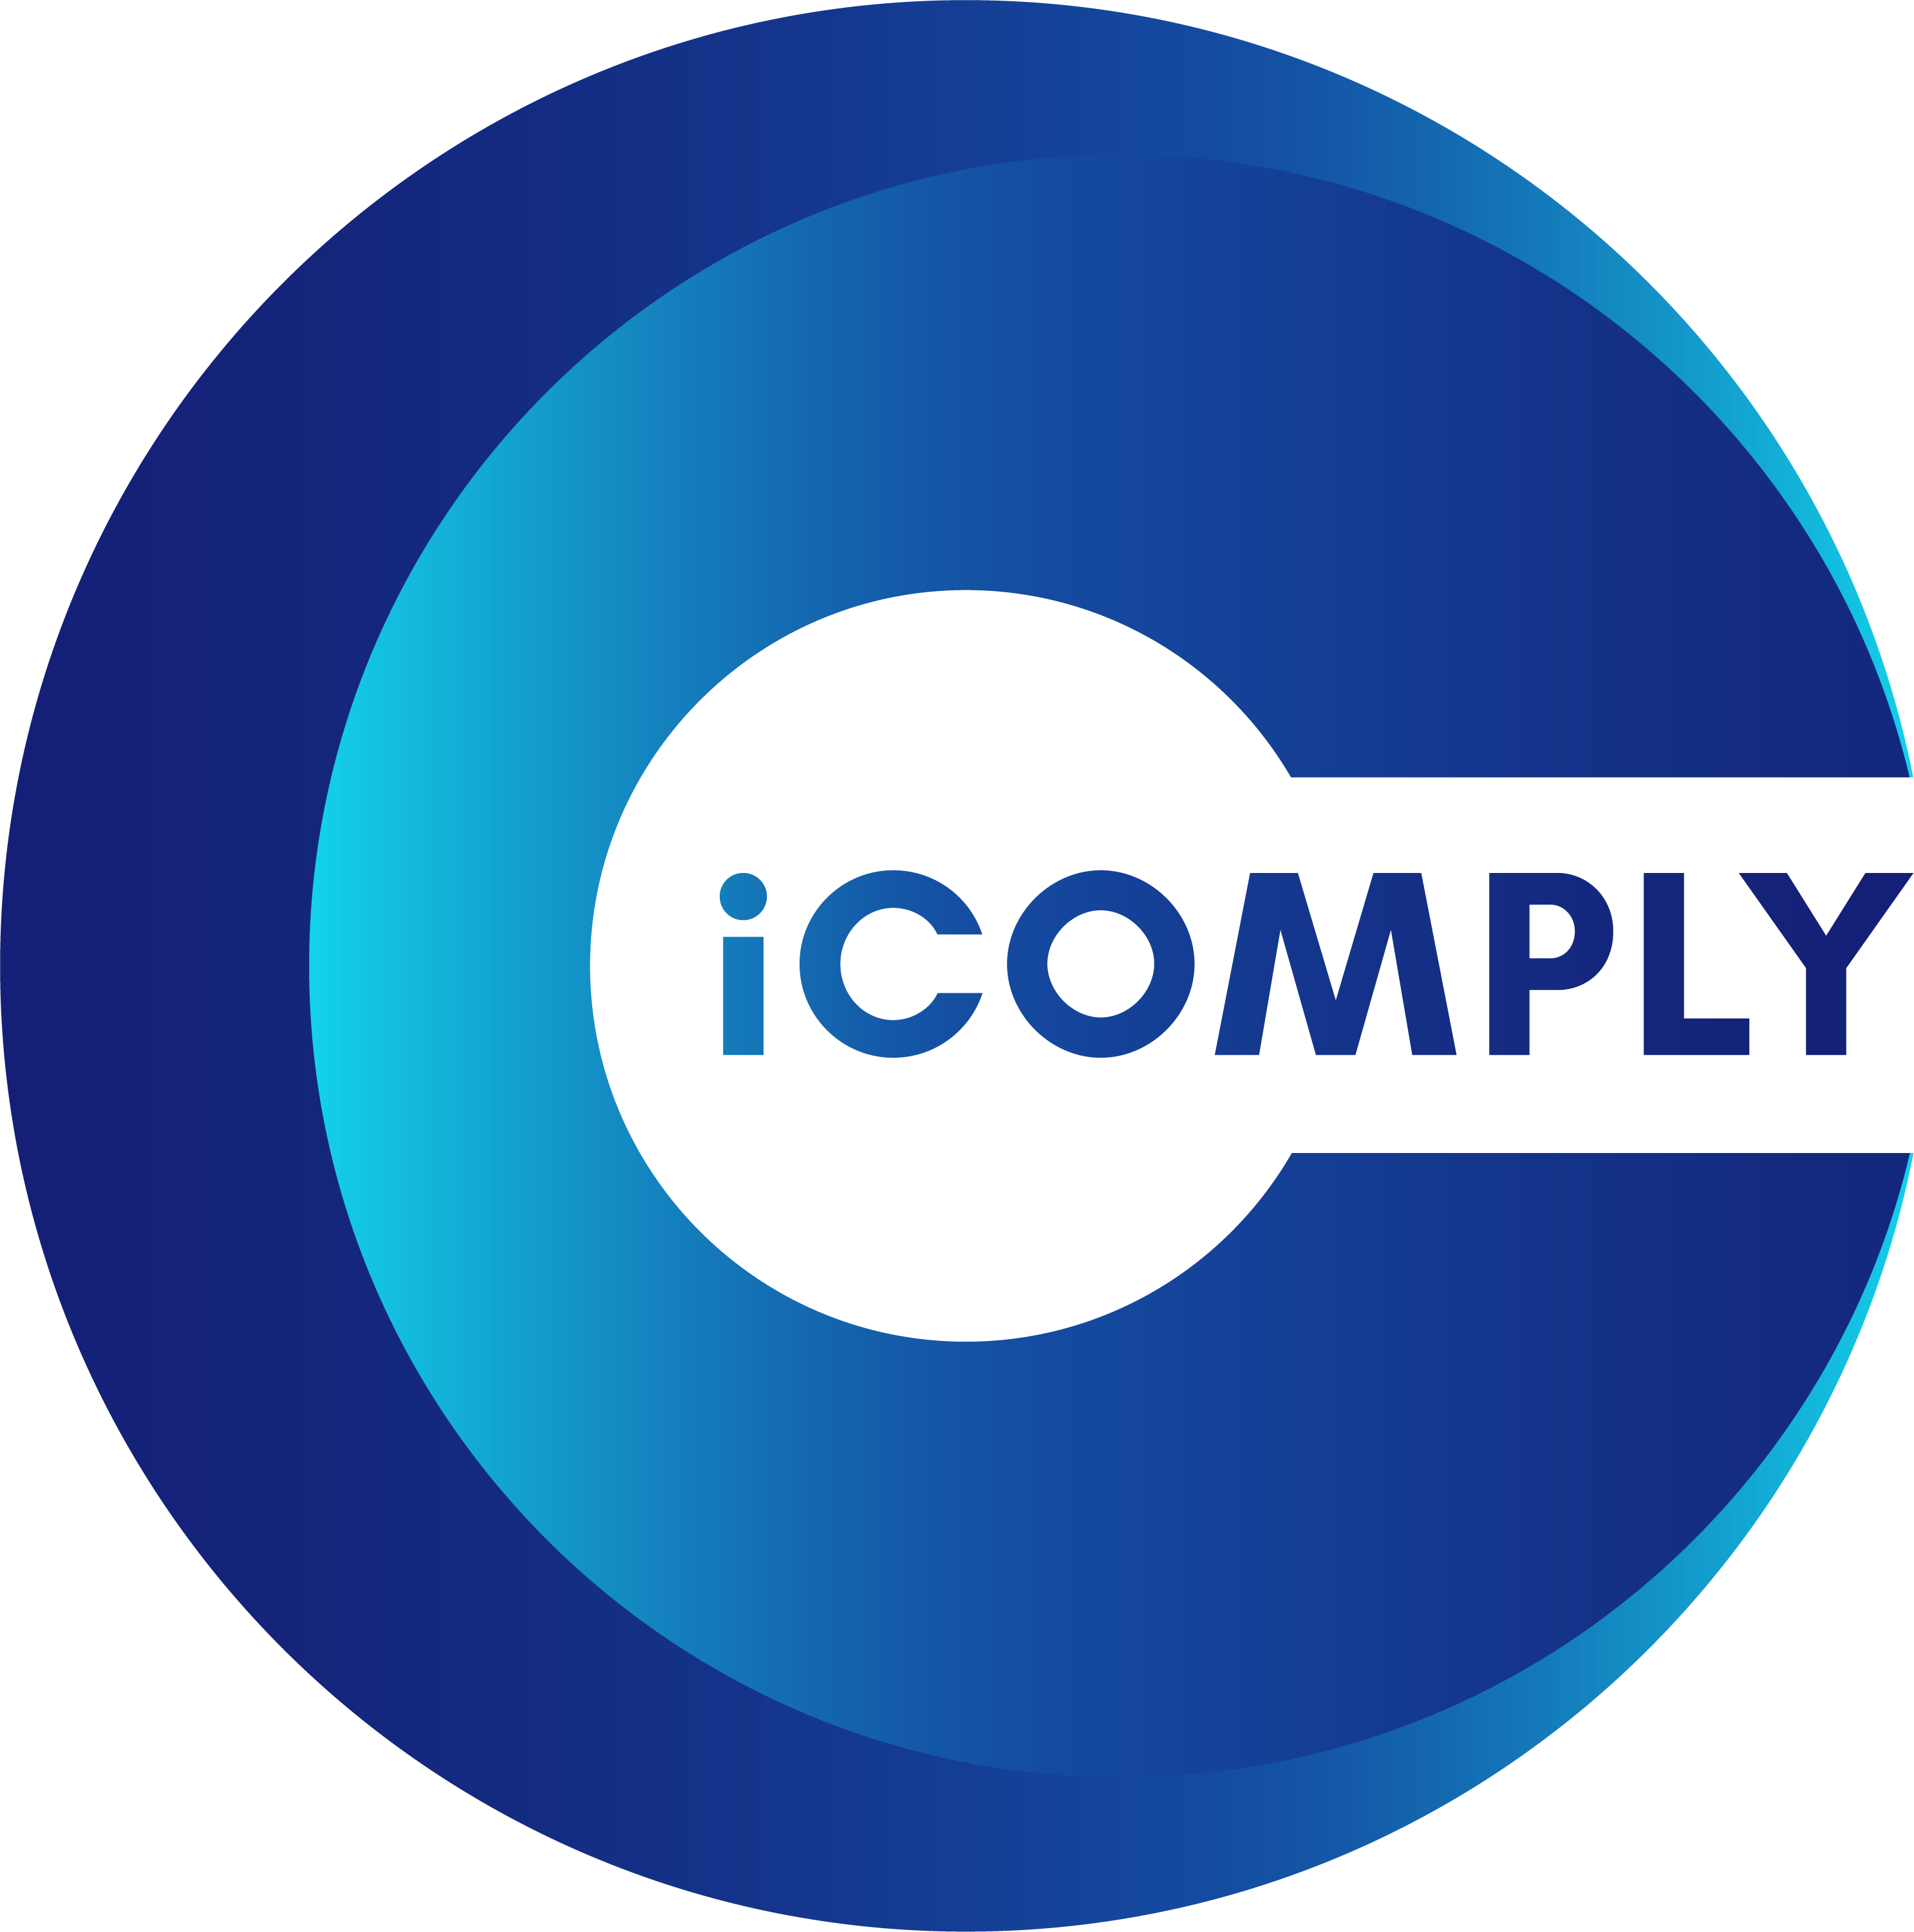 RegTech platform iComply launches public beta